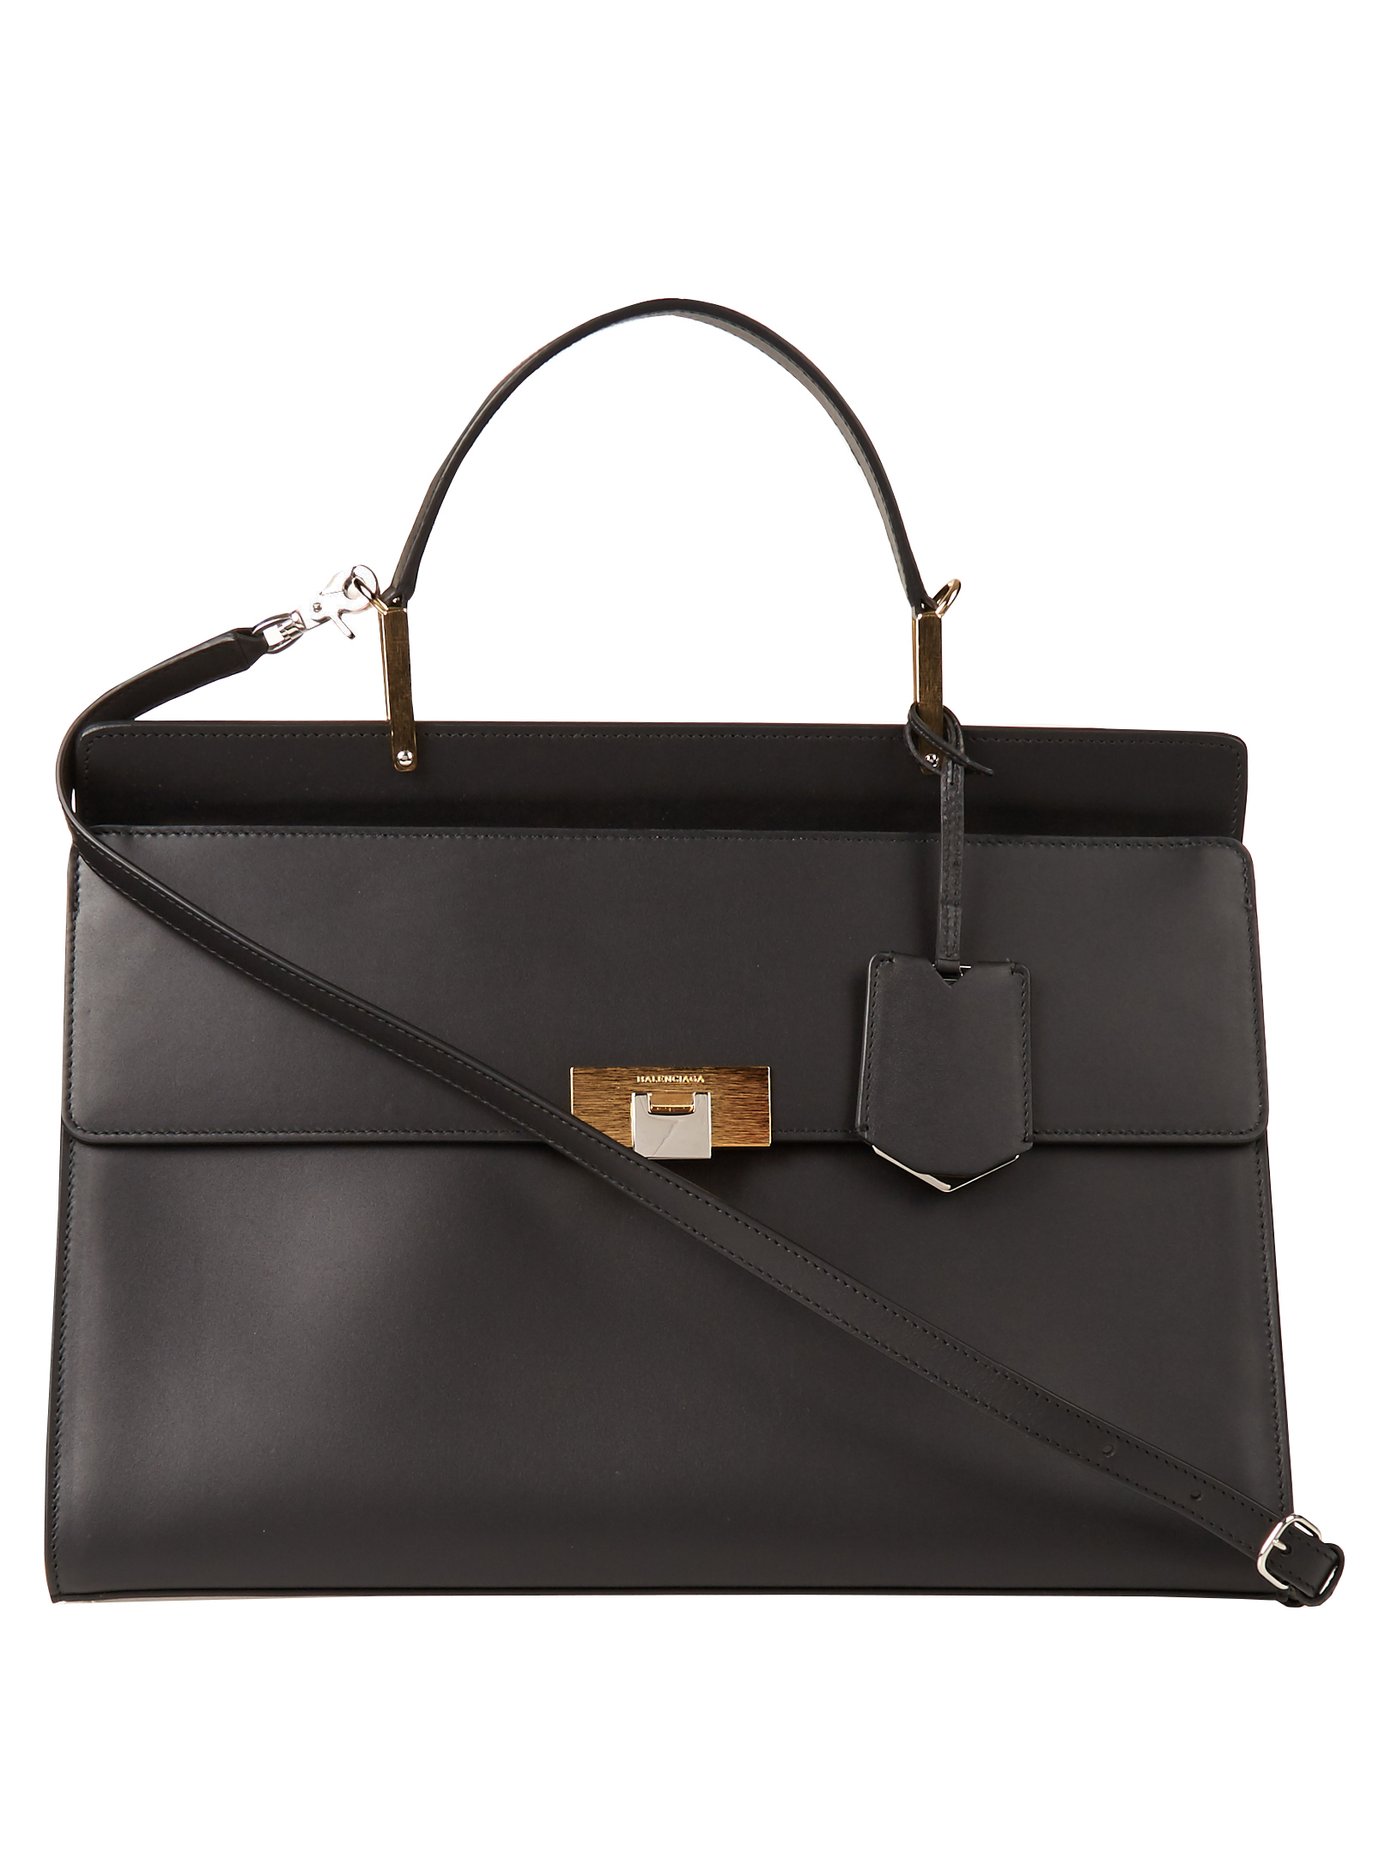 Le Dix leather bag | Balenciaga 